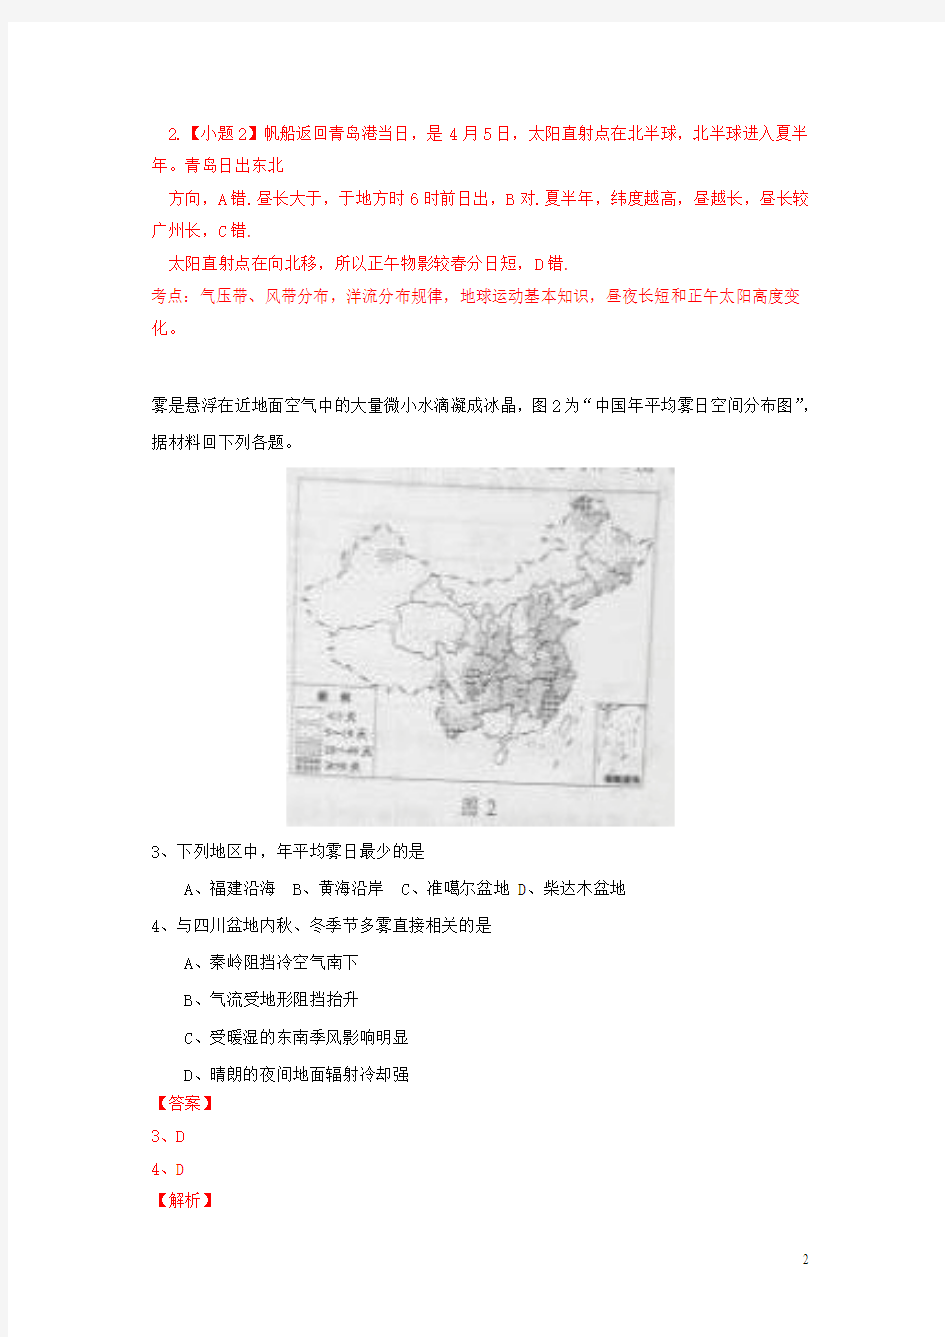 2015年高考真题——文综地理(四川卷)解析版